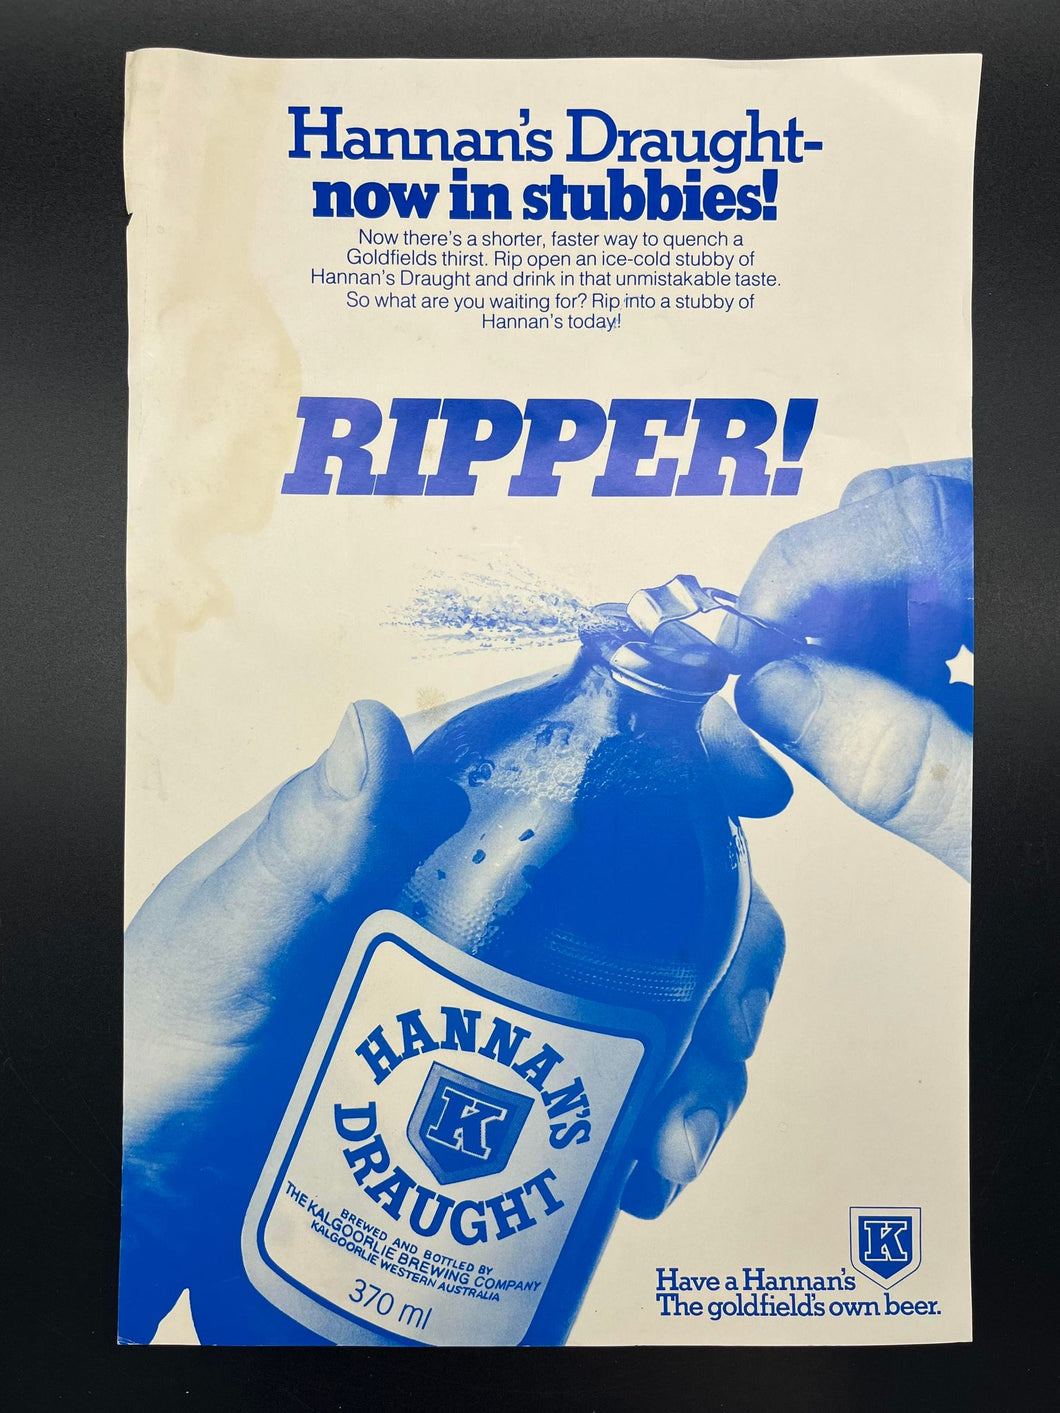 5) Original Hannan's Draught Stubbies Ripper Poster